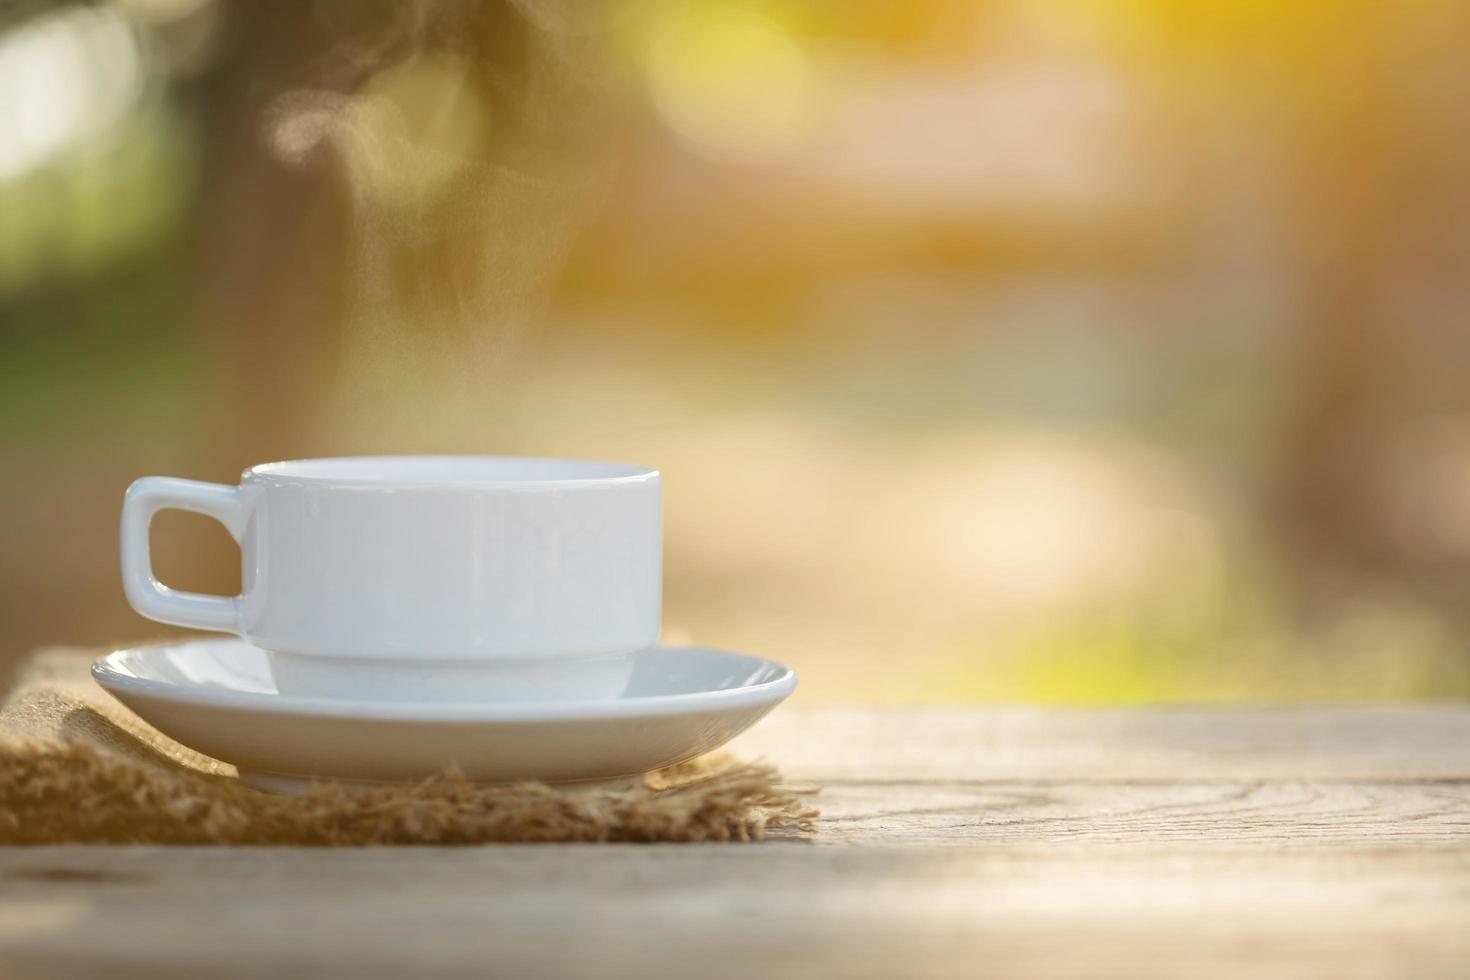 kopp kaffe och kaffebönor på utomhus träbord i morgonsolljus och bokeh bakgrund foto